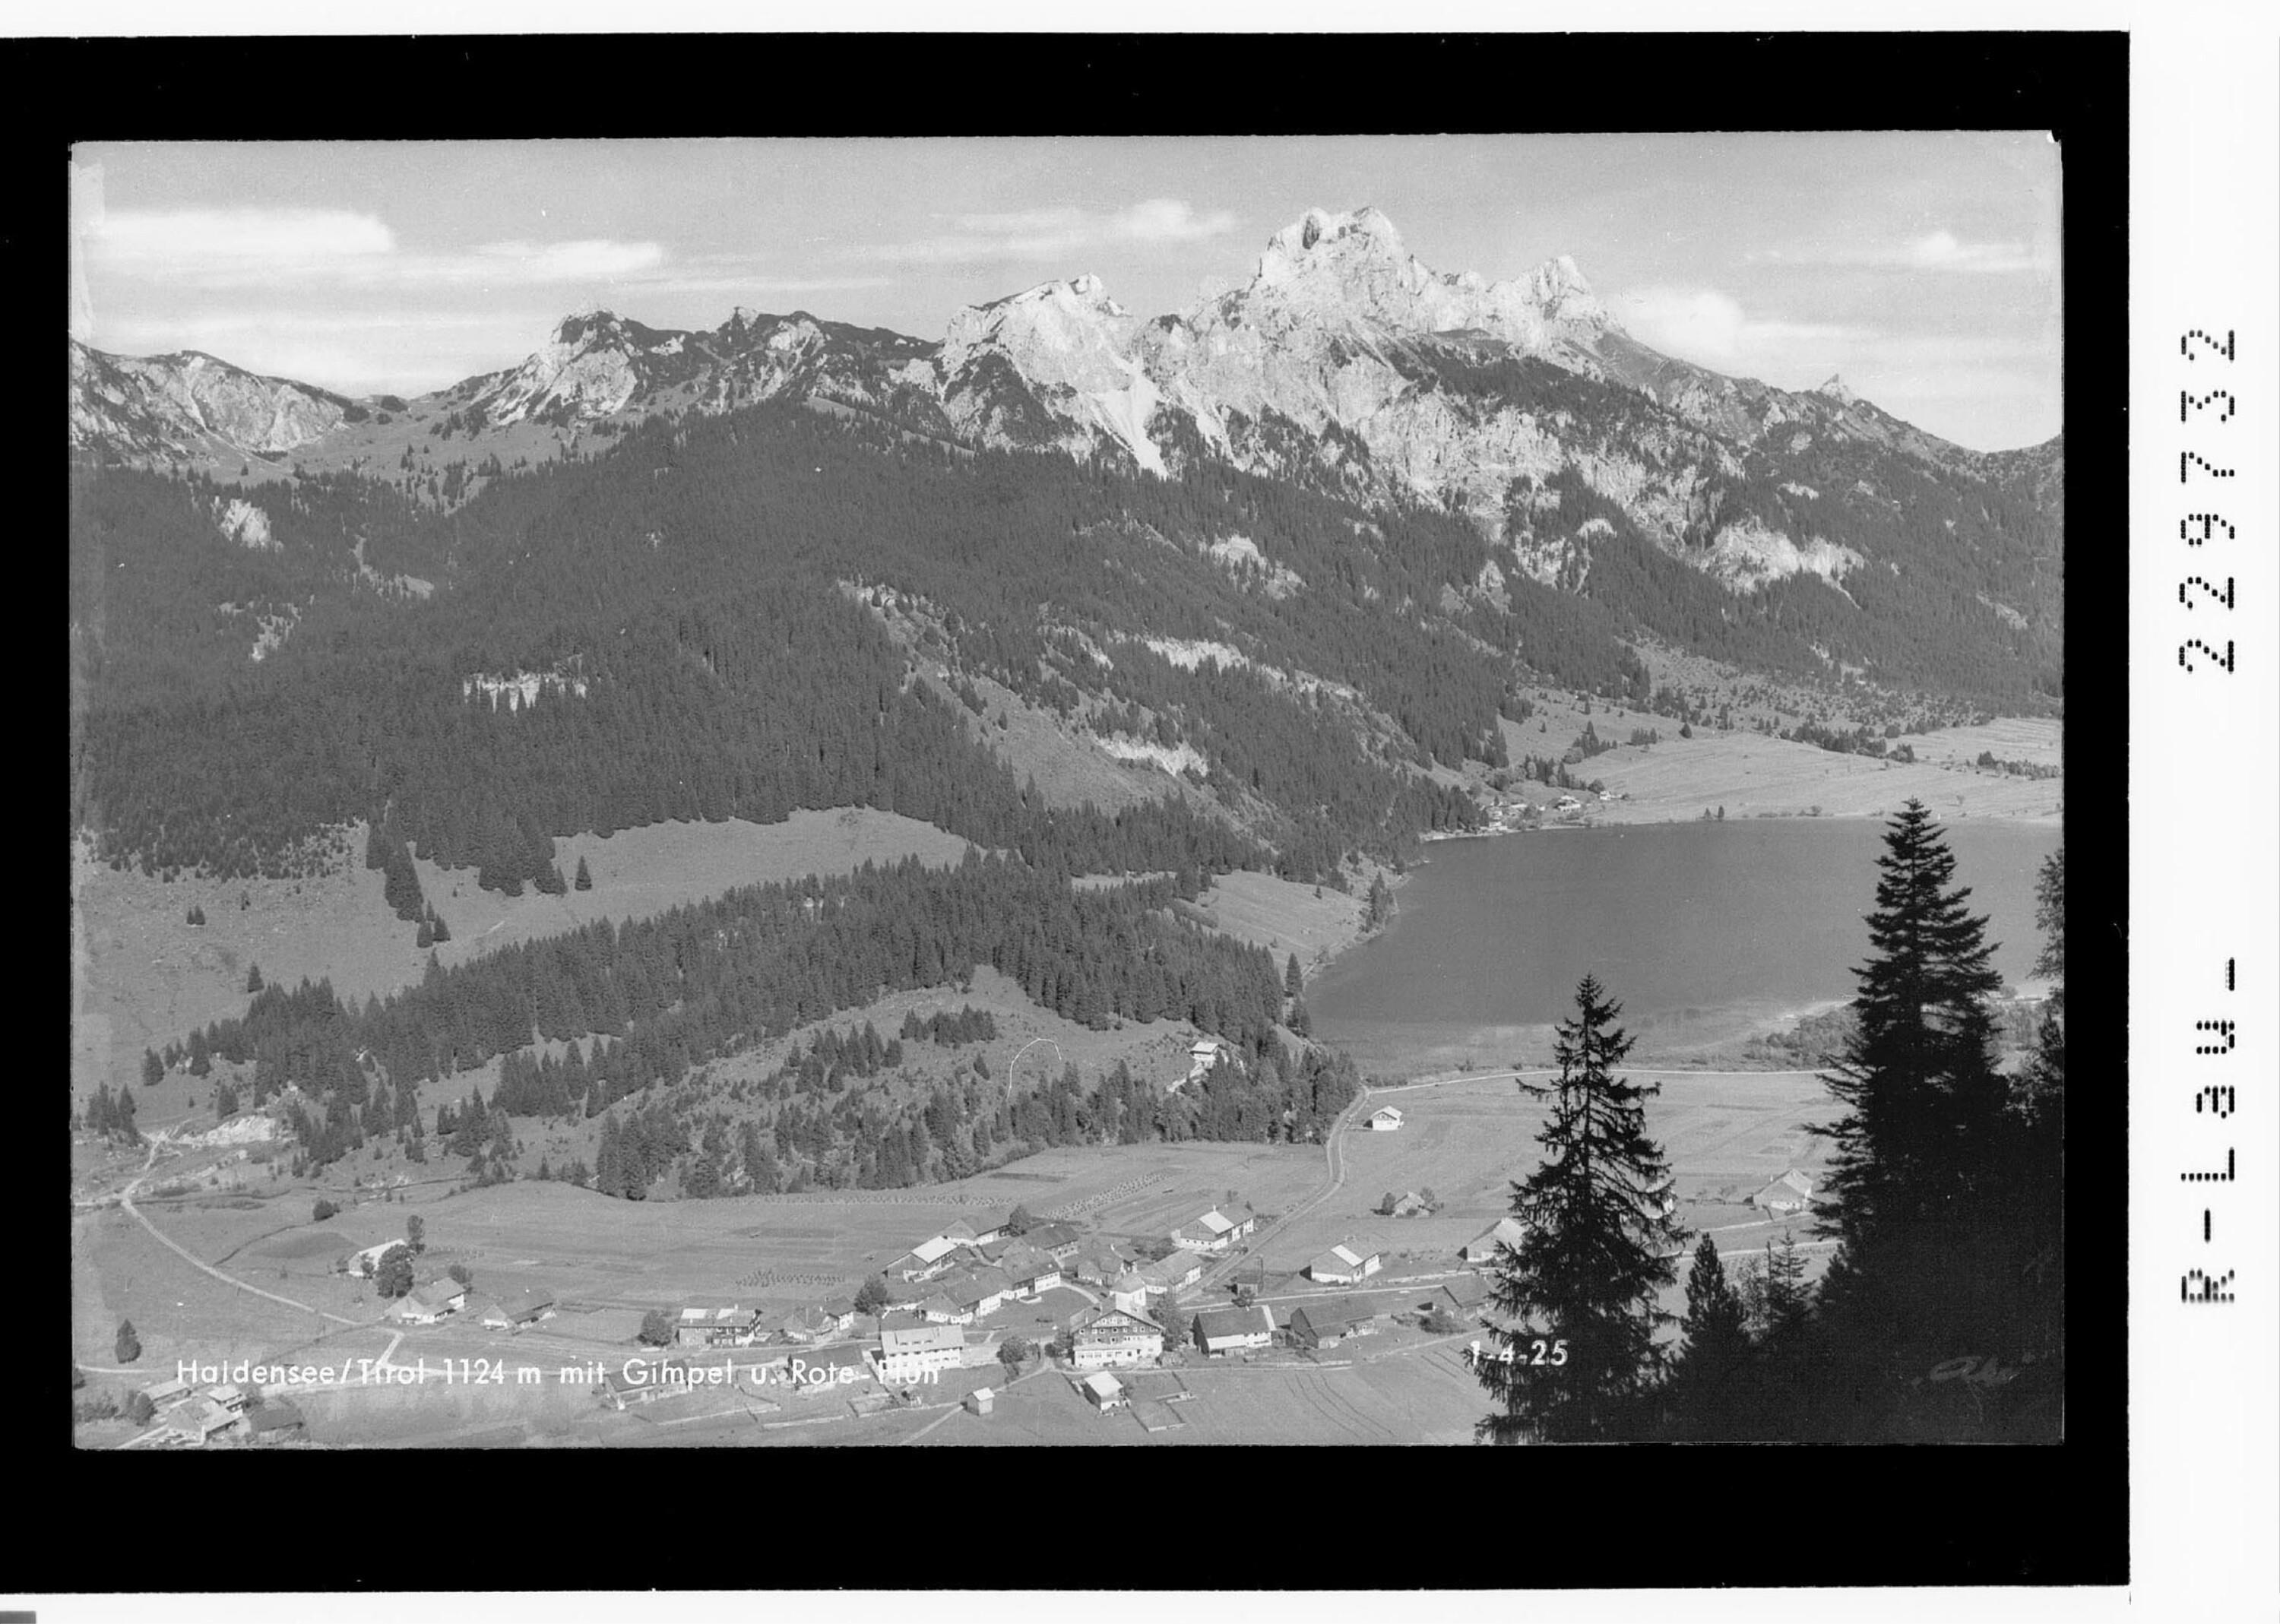 Haldensee / Tirol 1124 m mit Gimpel und Rote Flüh></div>


    <hr>
    <div class=